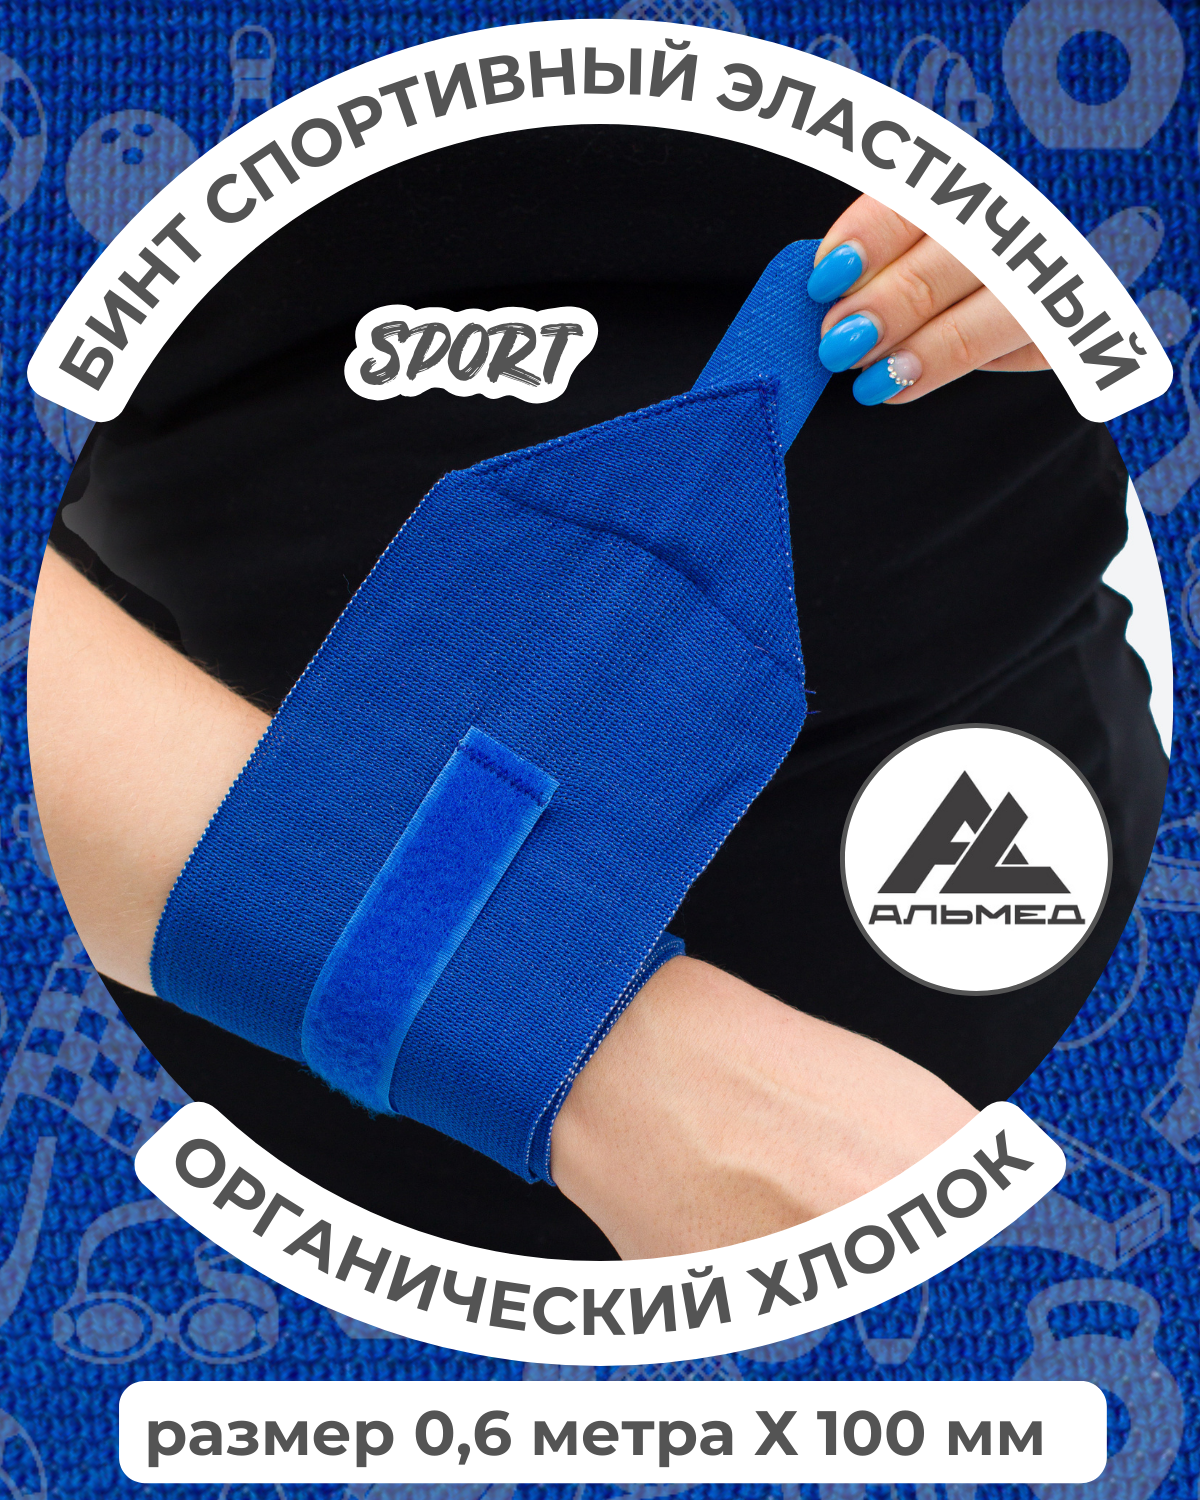 Бинт спортивный эластичный компрессионный органический хлопок, для фиксации, застёжка «Velcro» 0,6 м*100мм, с липучкой, синий, Альмед